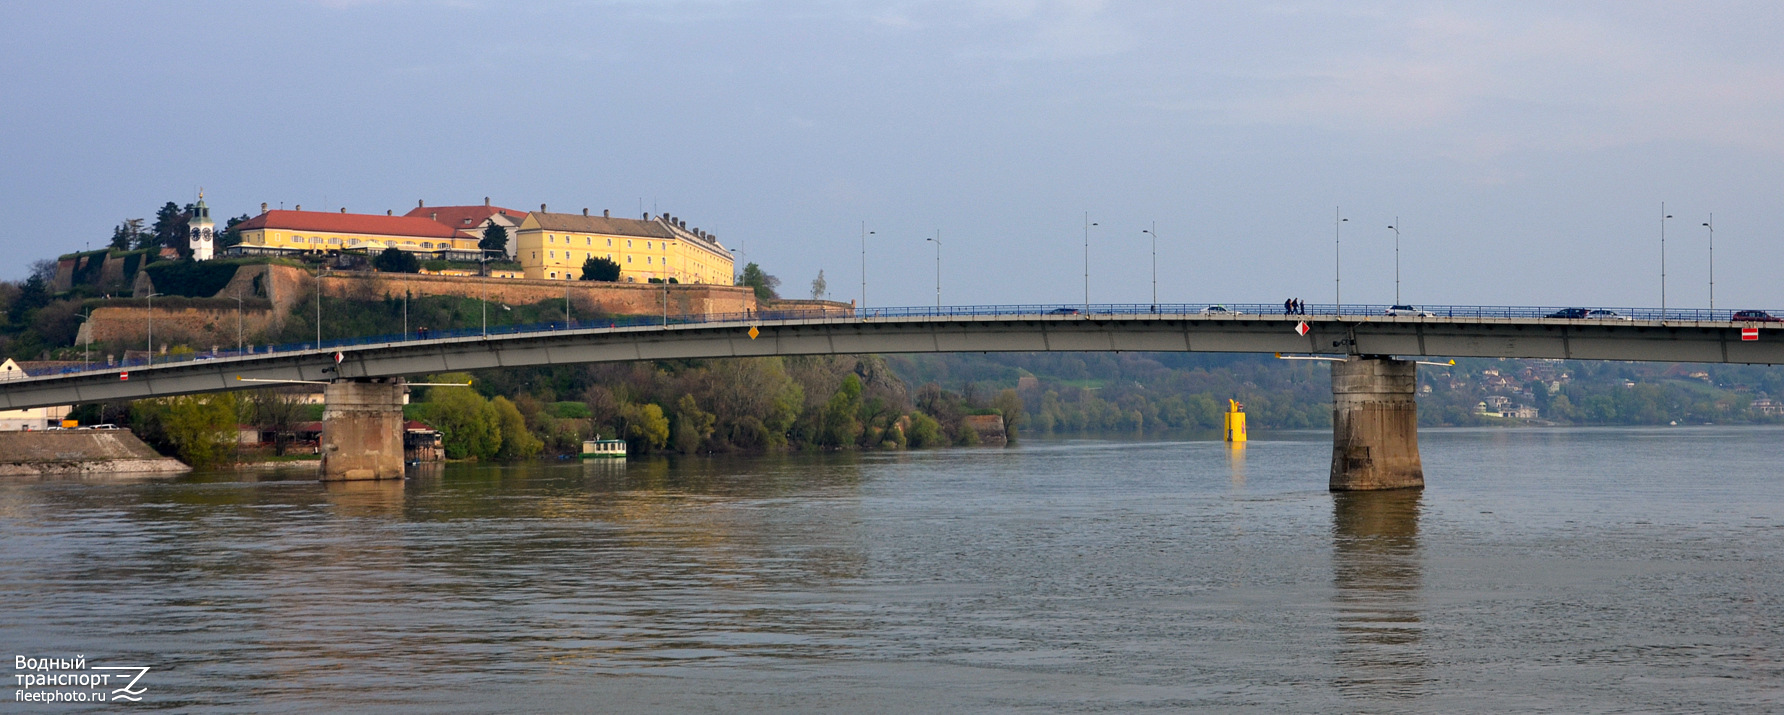 Danube River, Novi Sad